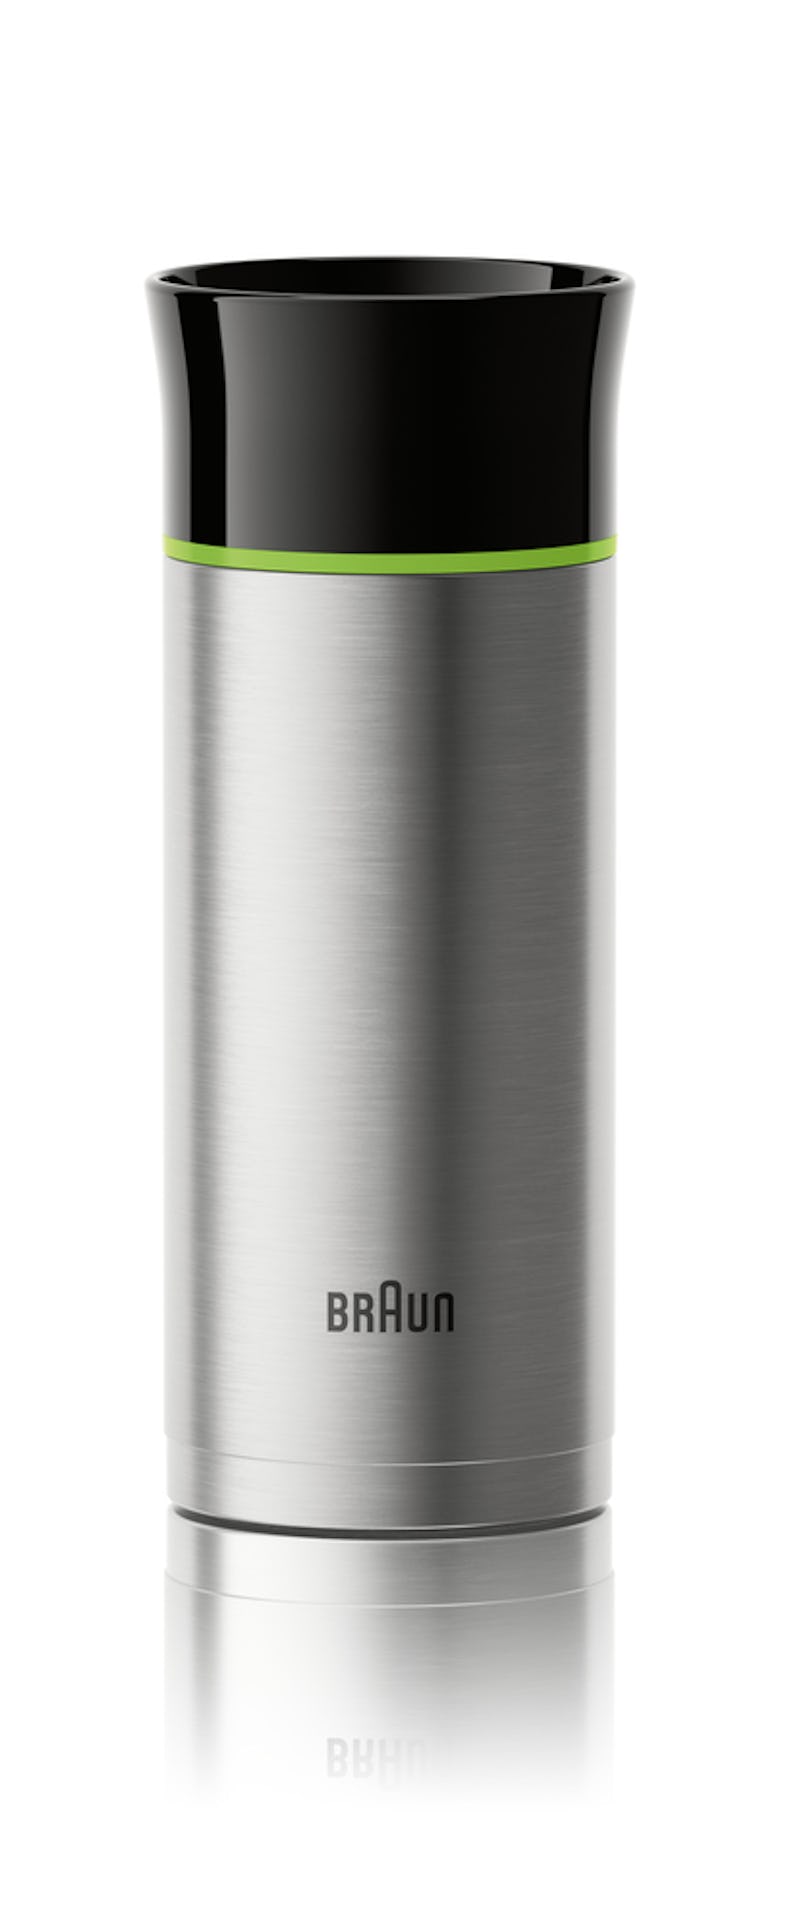 Braun Filterkaffeemaschine KF 7020, | 12 Tassen-Aroma-Kanne Marktplatz METRO